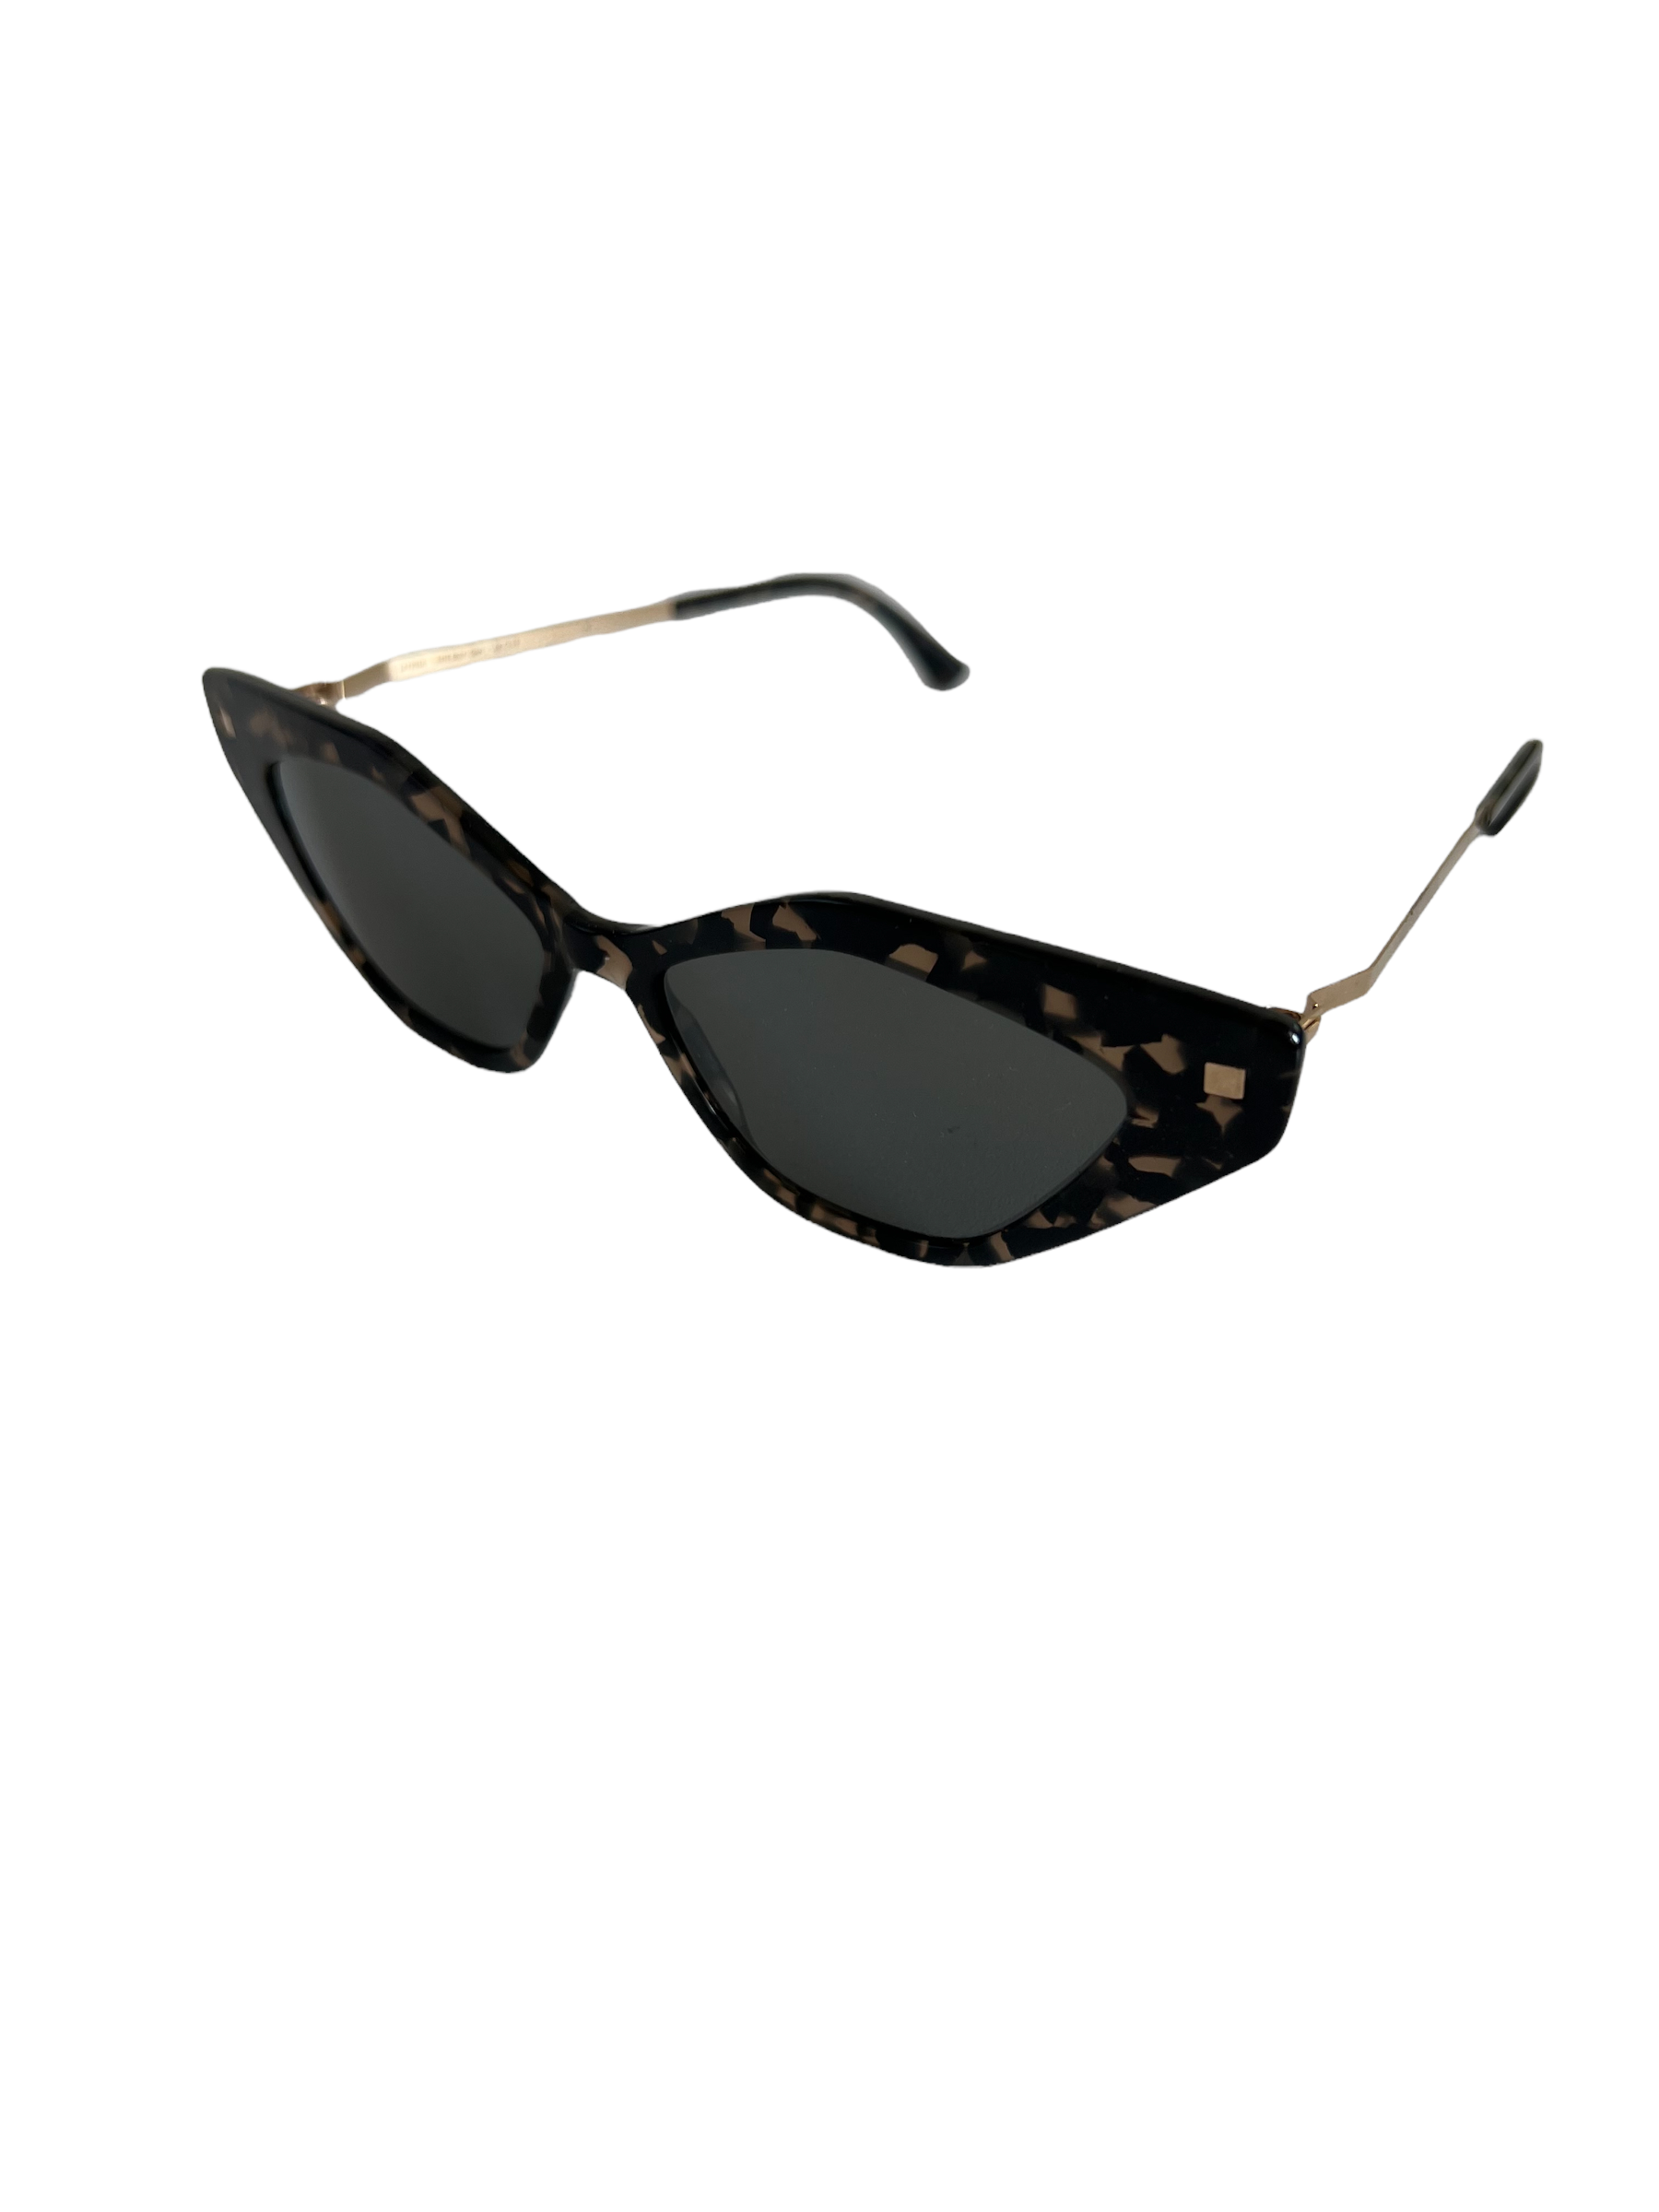 Produktbild der Mykita Sunglasses leo Gold flexible von der Seite vor weißem Hintergrund.